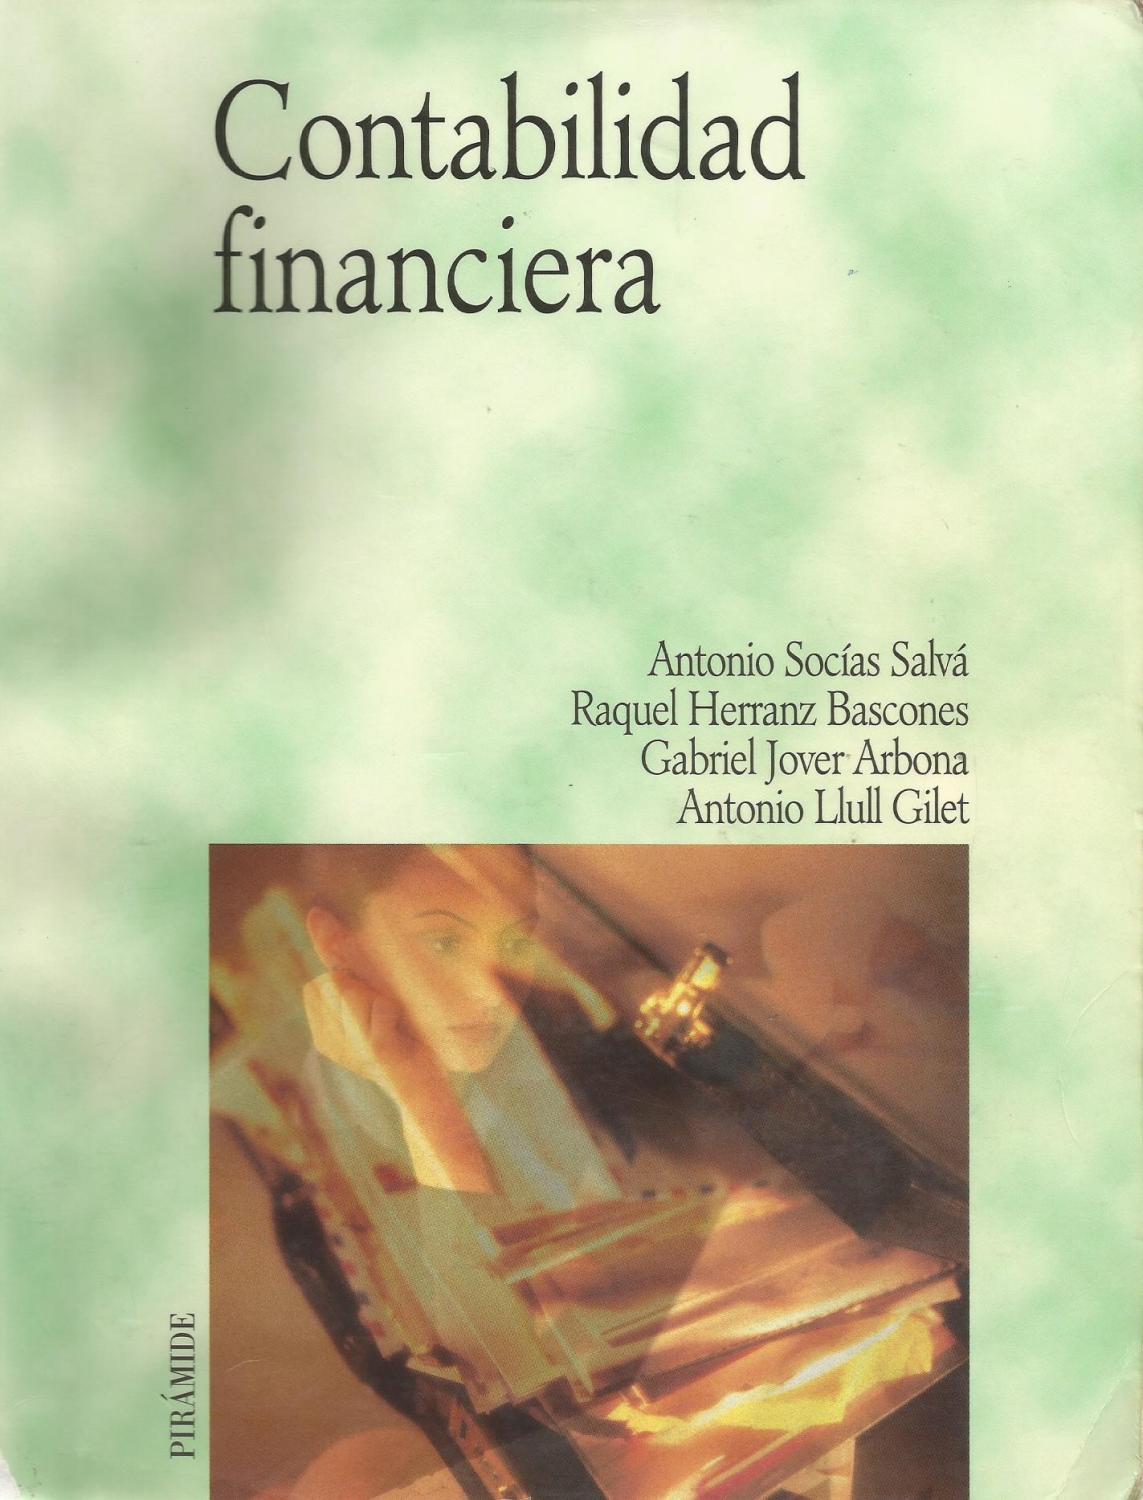 Contabilidad financiera - Antonio Socías Salvá y otros